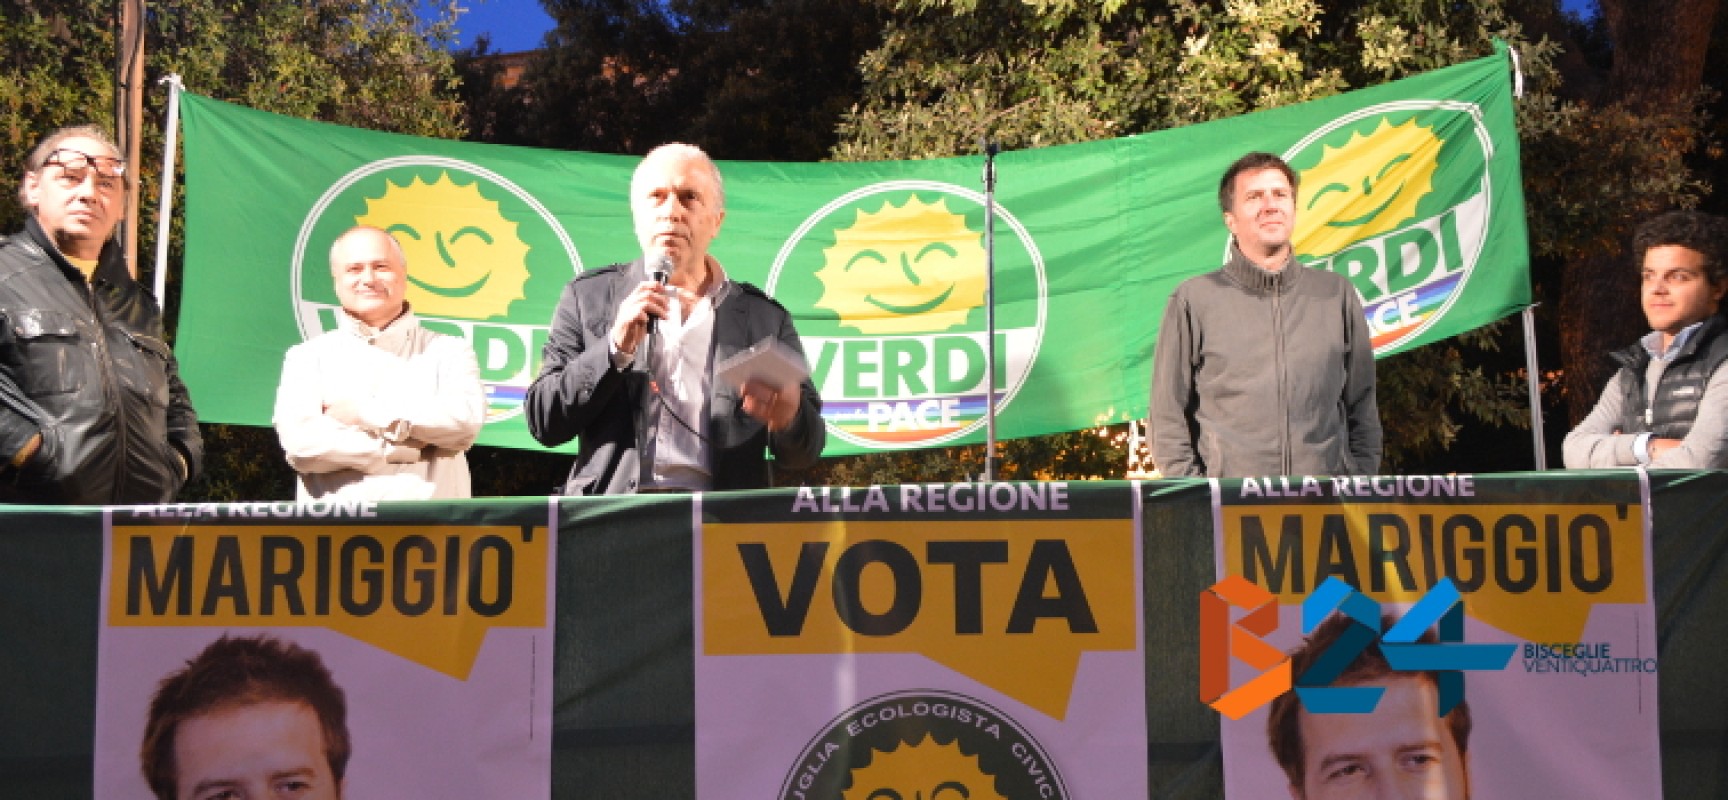 Mariggiò (Verdi): «Il nostro è il programma giusto per la Puglia». Bordate di Mastrodonato a Spina e Napoletano / AUDIO e FOTO